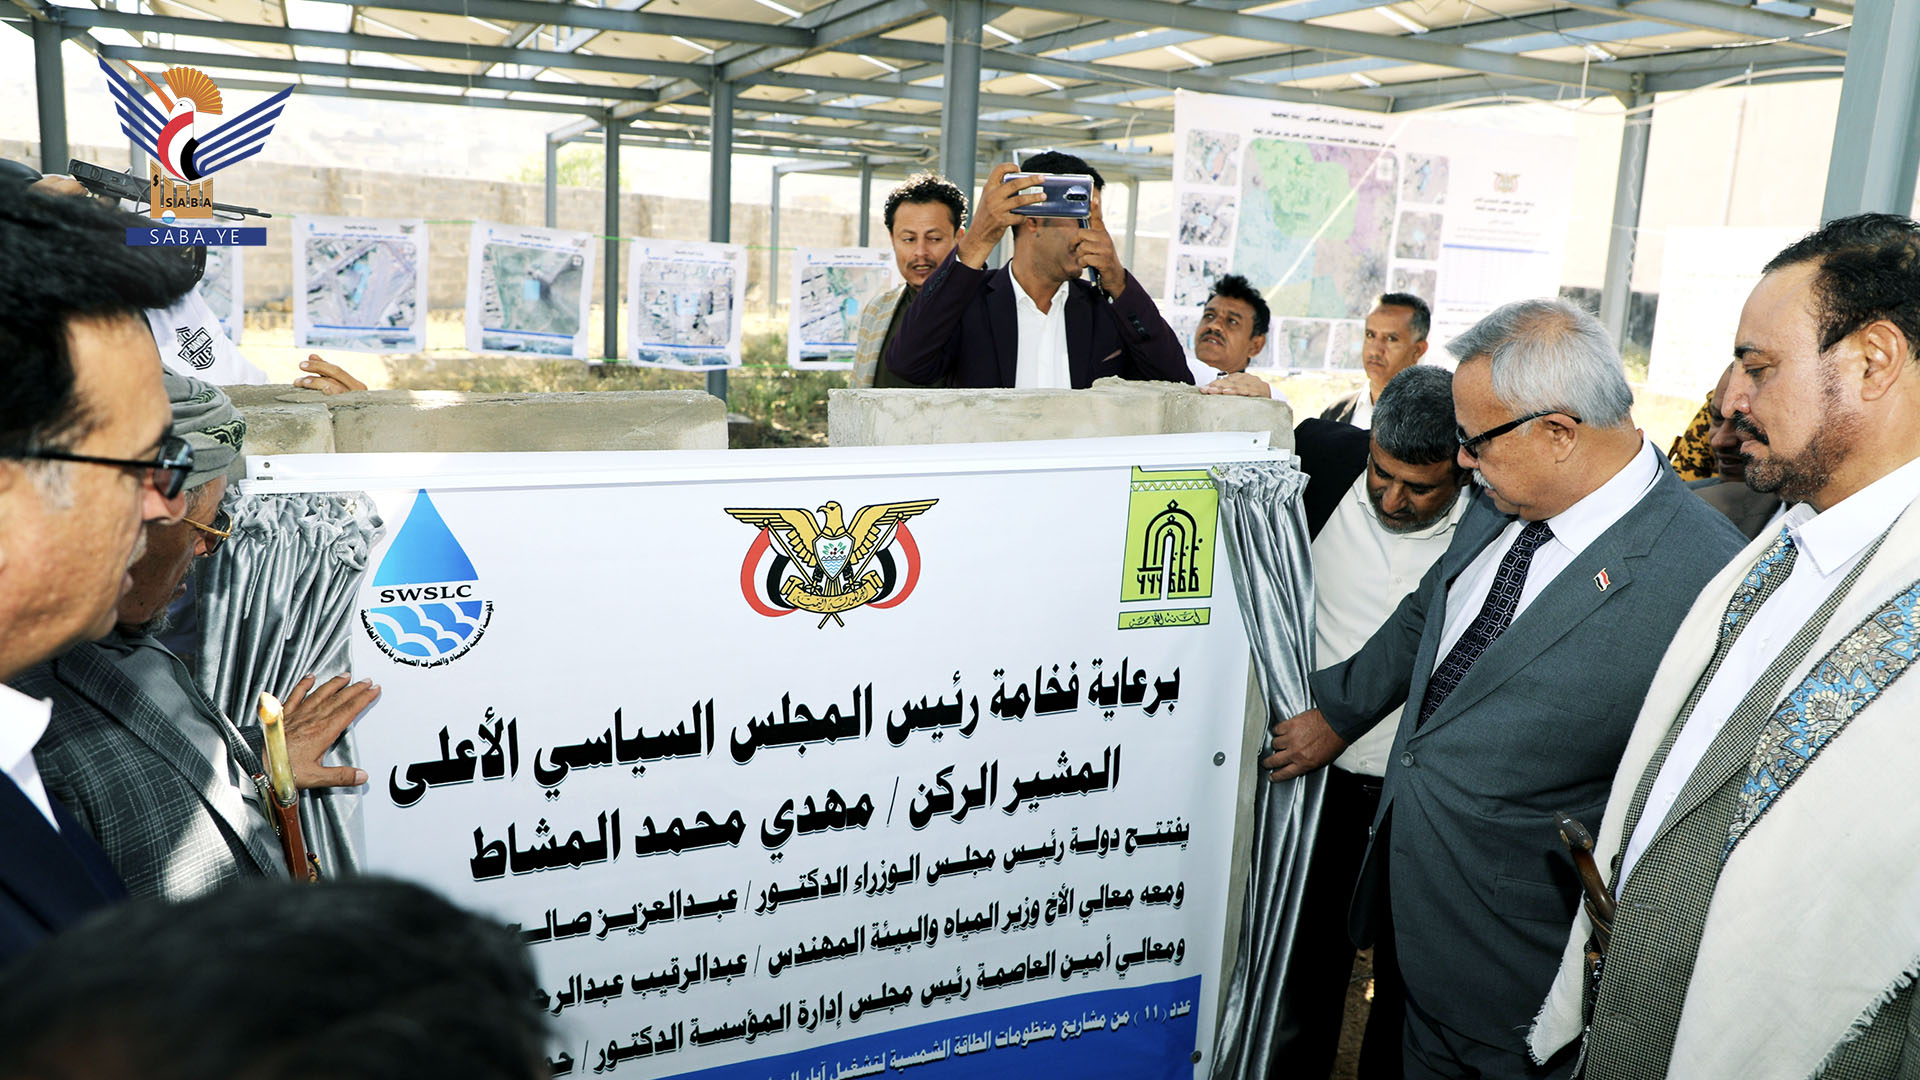 الدكتور بن حبتور يفتتح 11 مشروع مياه مزودة بمنظومة طاقة شمسية بأمانة العاصمة